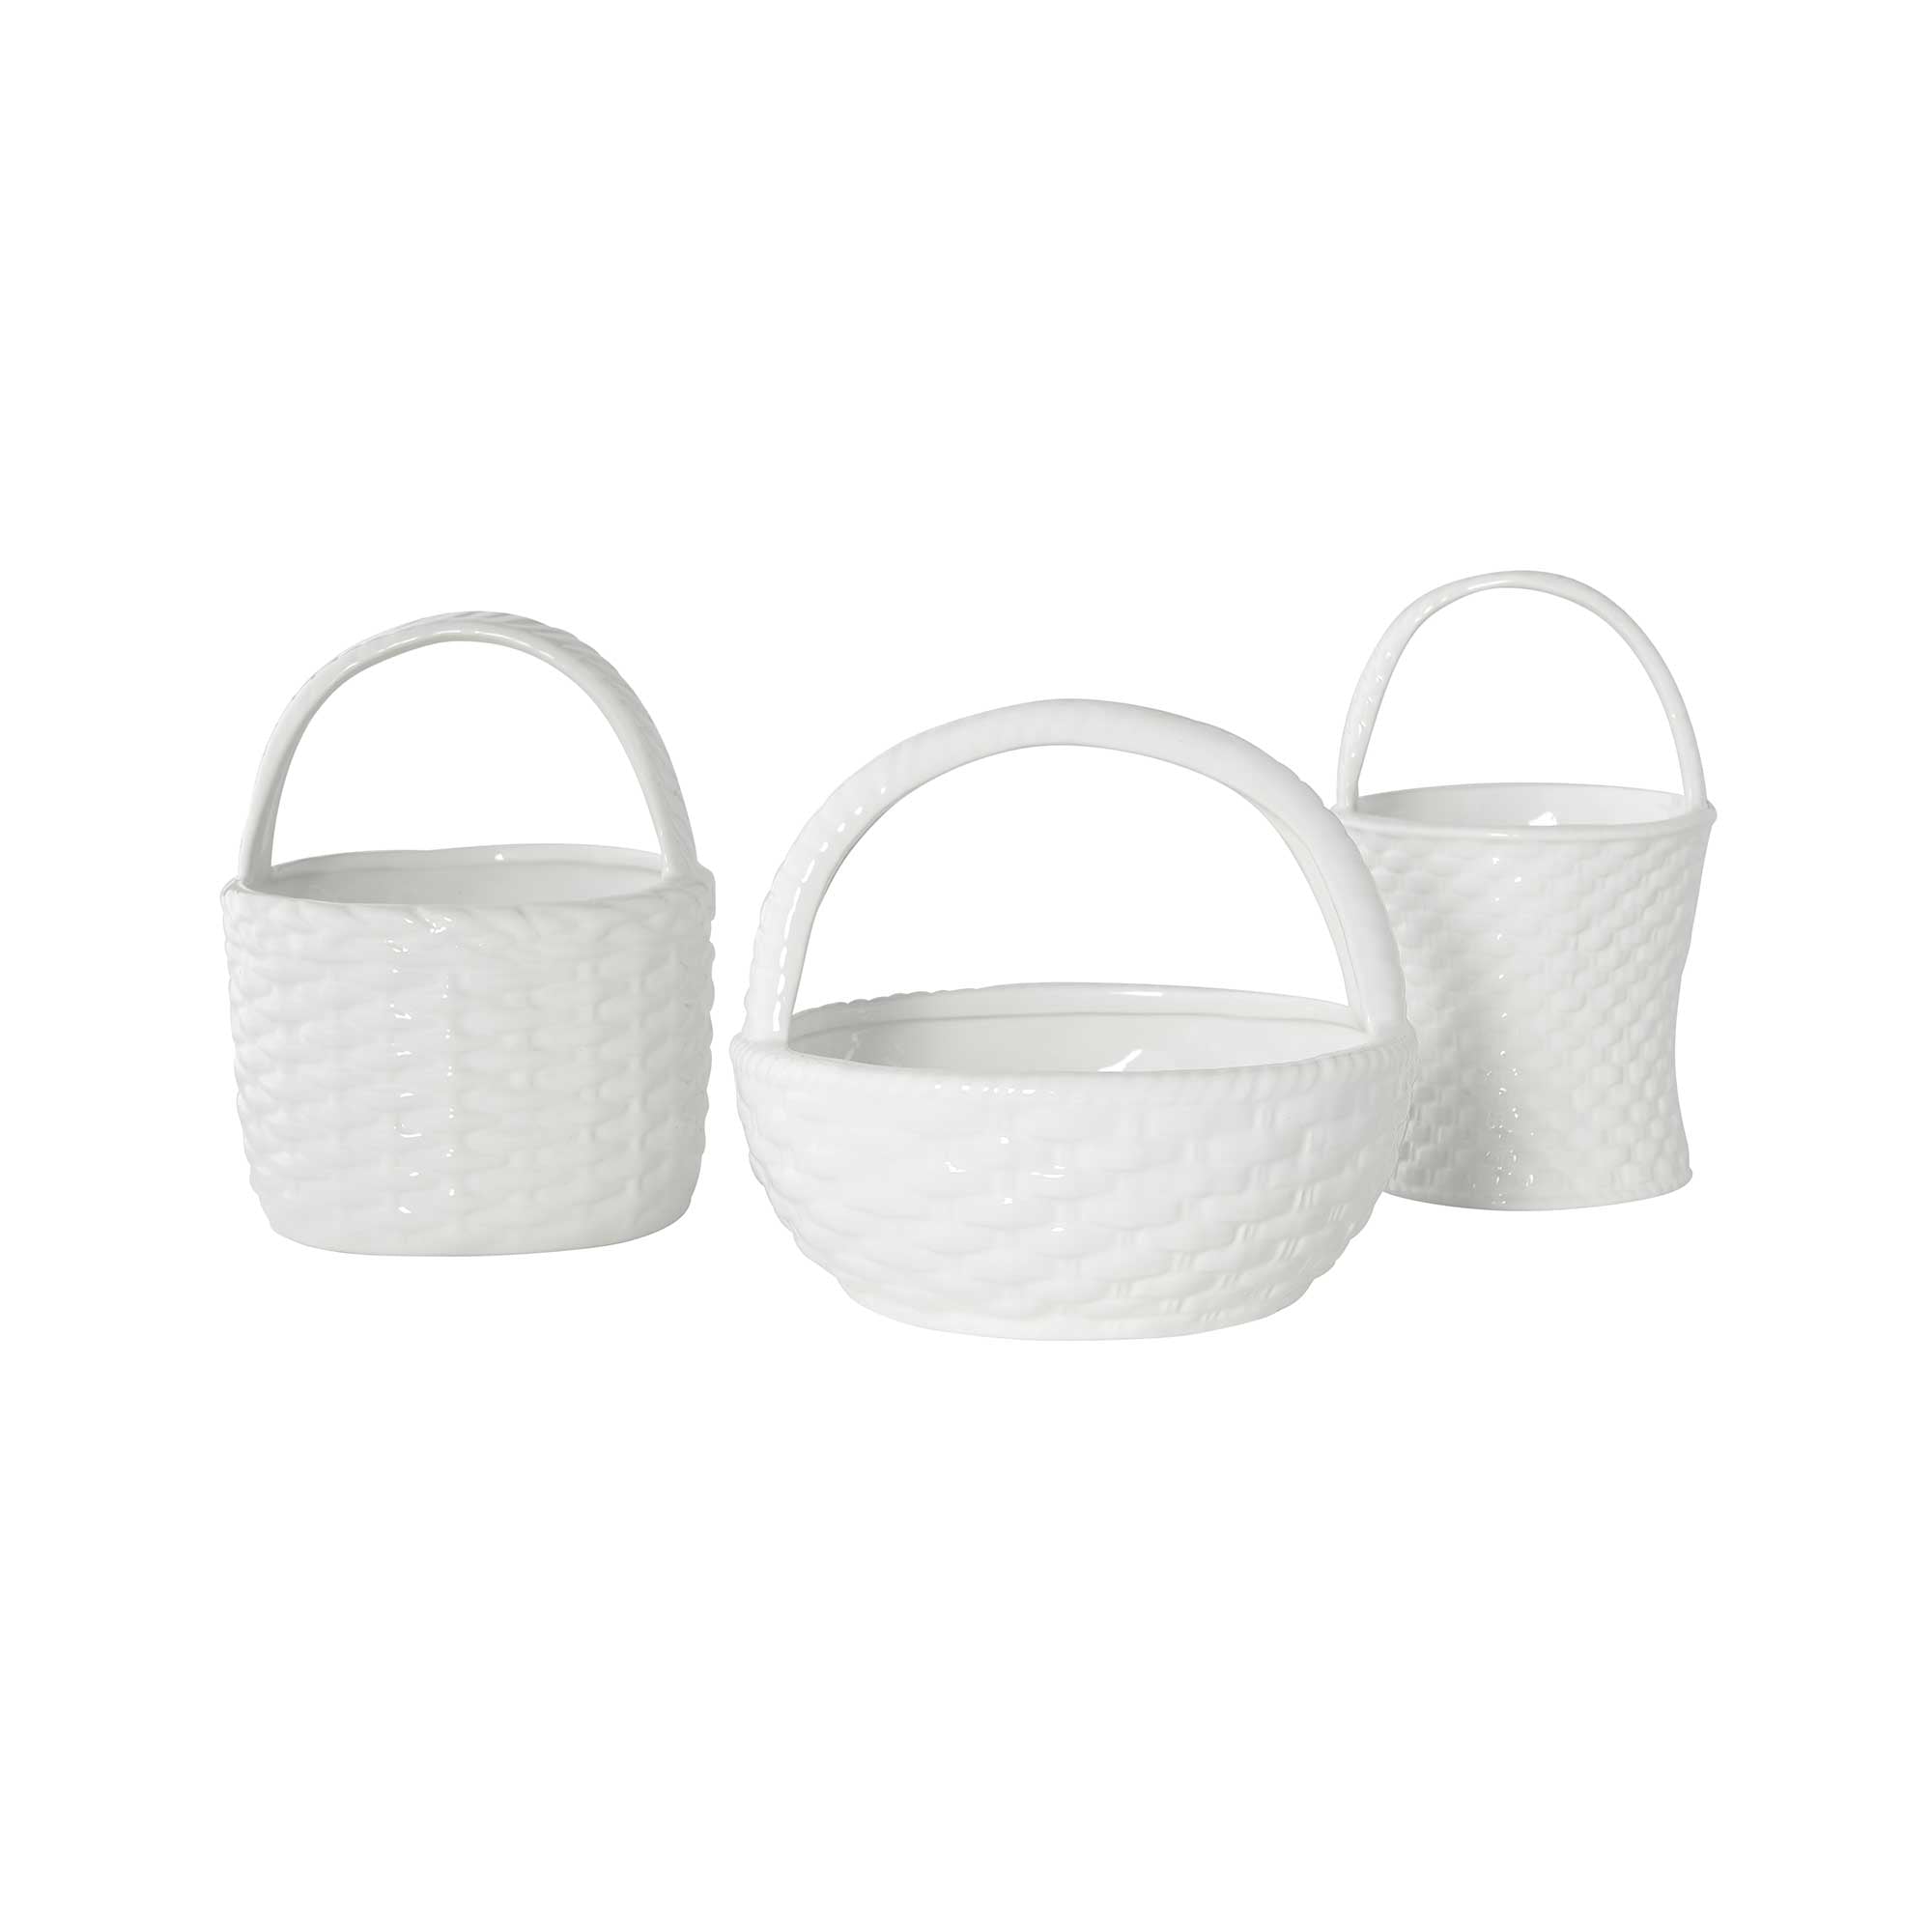 White Balboa Baskets for Easter Decor